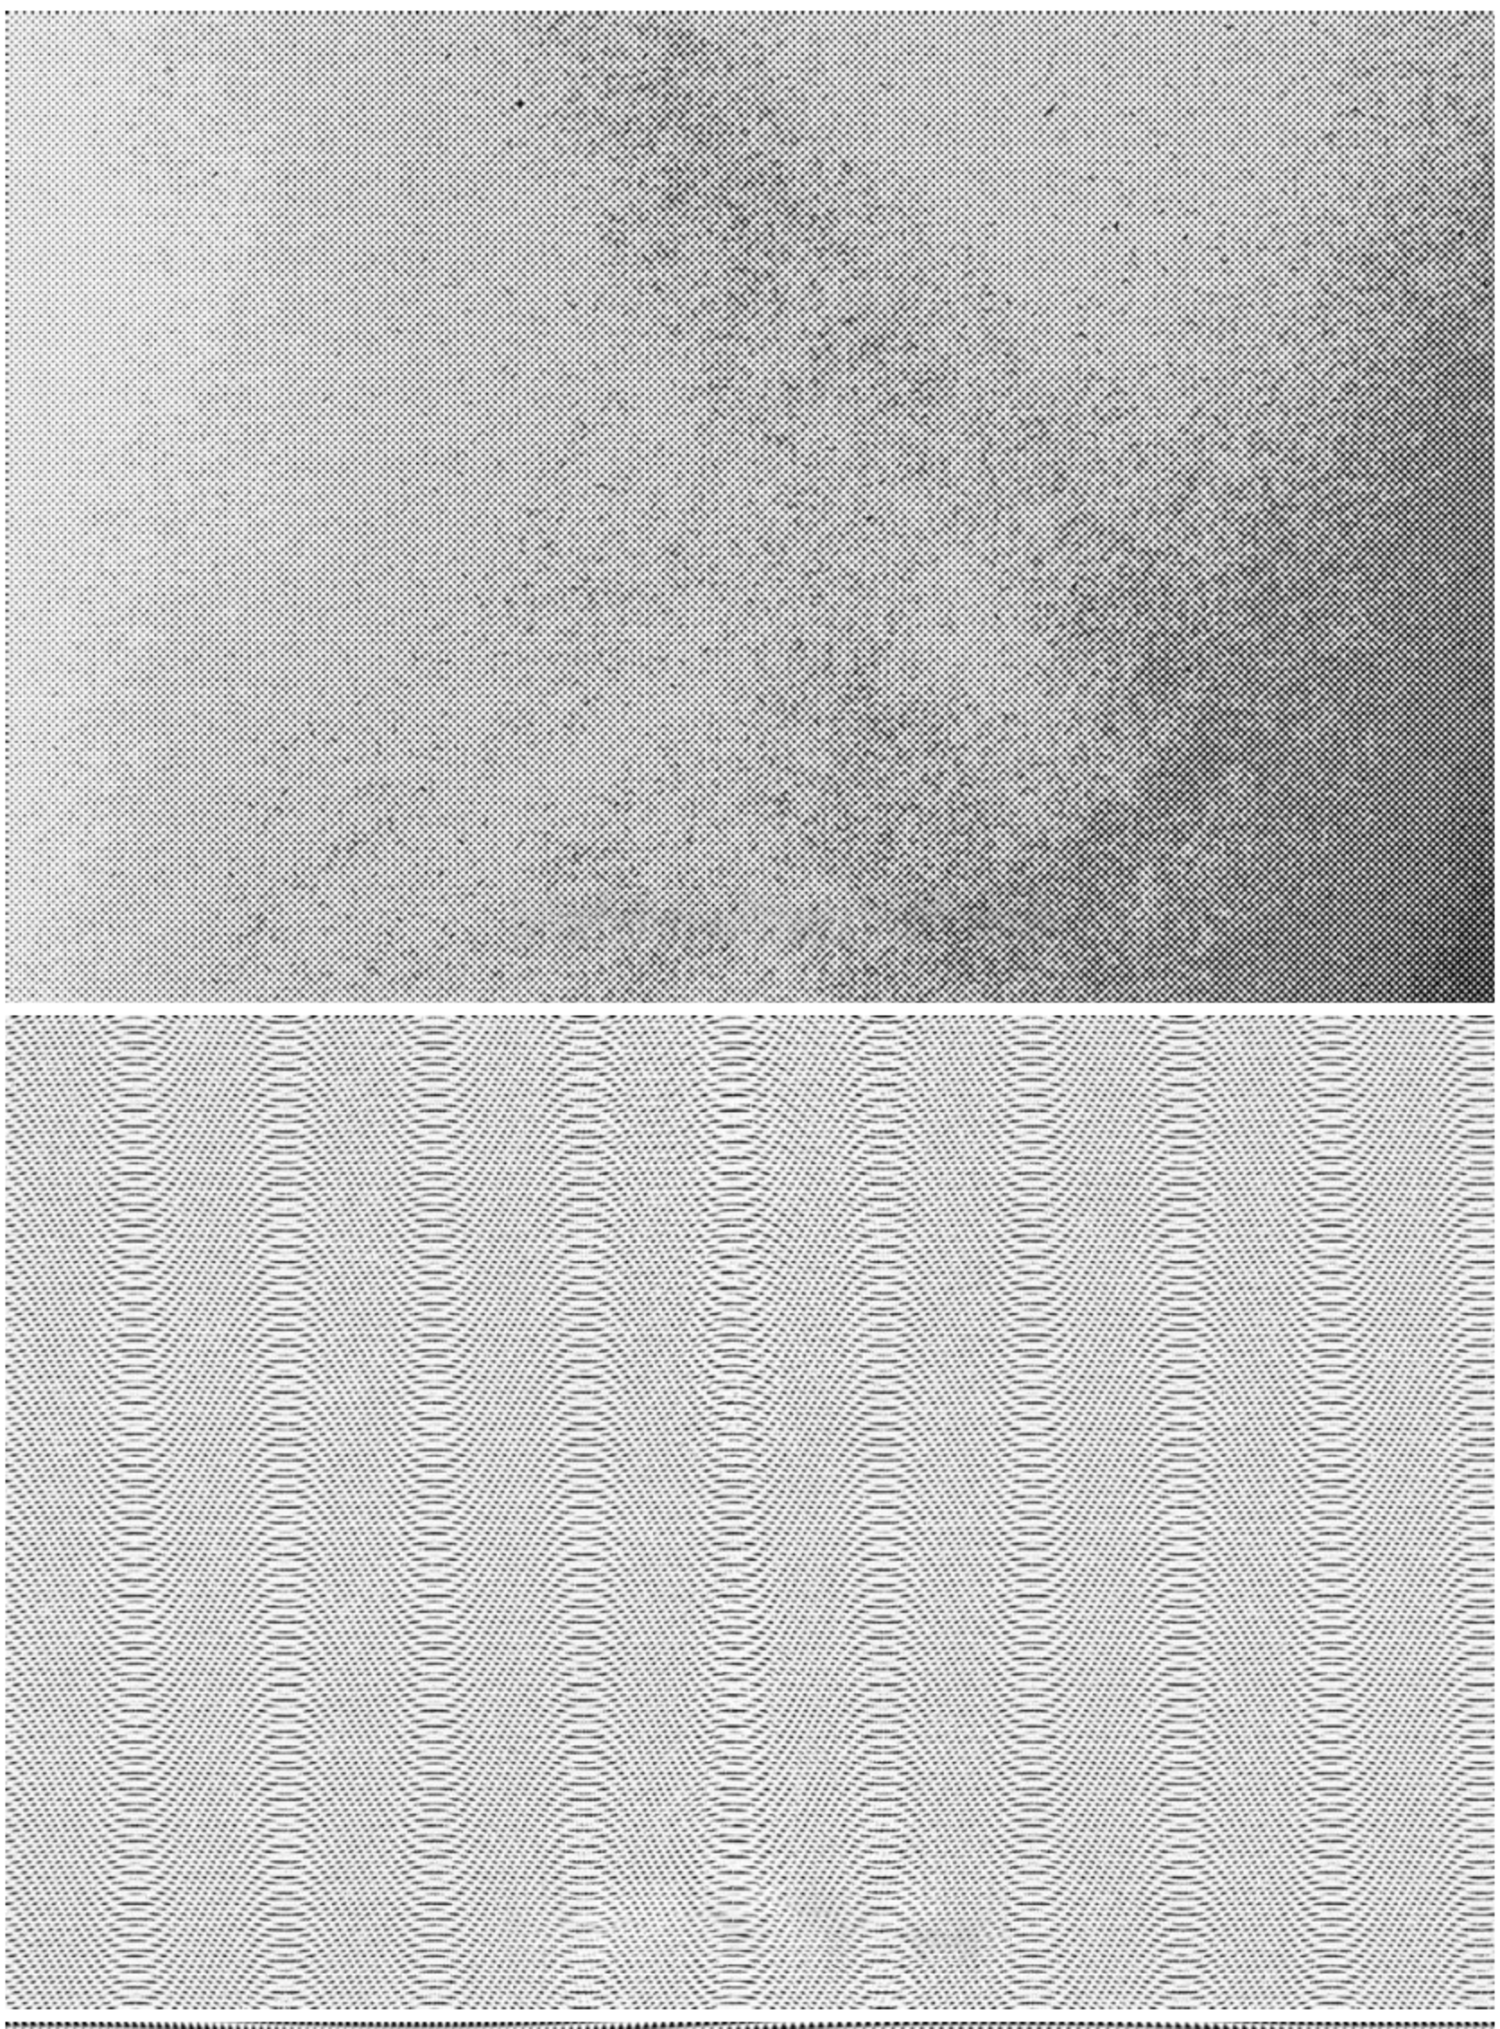 5366 抽象流体涂料绘画纹理的背景图片素材-Emerge 12 Abstract Paint Textures@GOOODME.COM